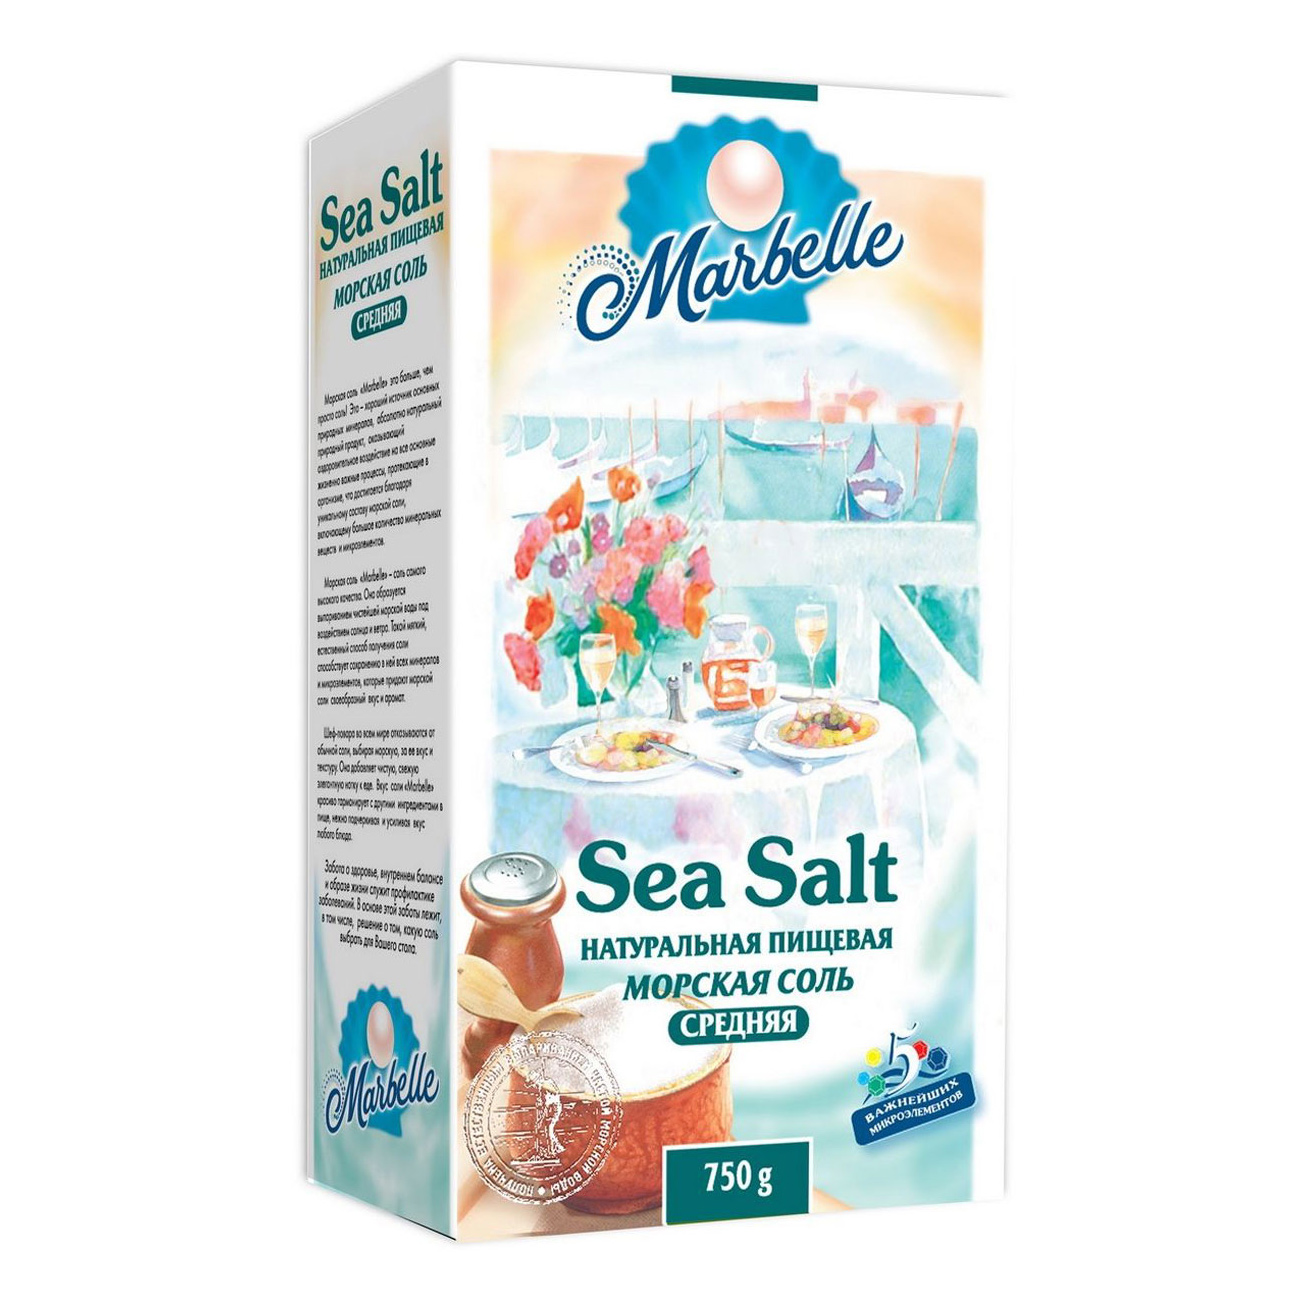 Соль Marbelle морская пищевая средняя 750 г соль морская пудофф marbelle крупная помол 3 750 г